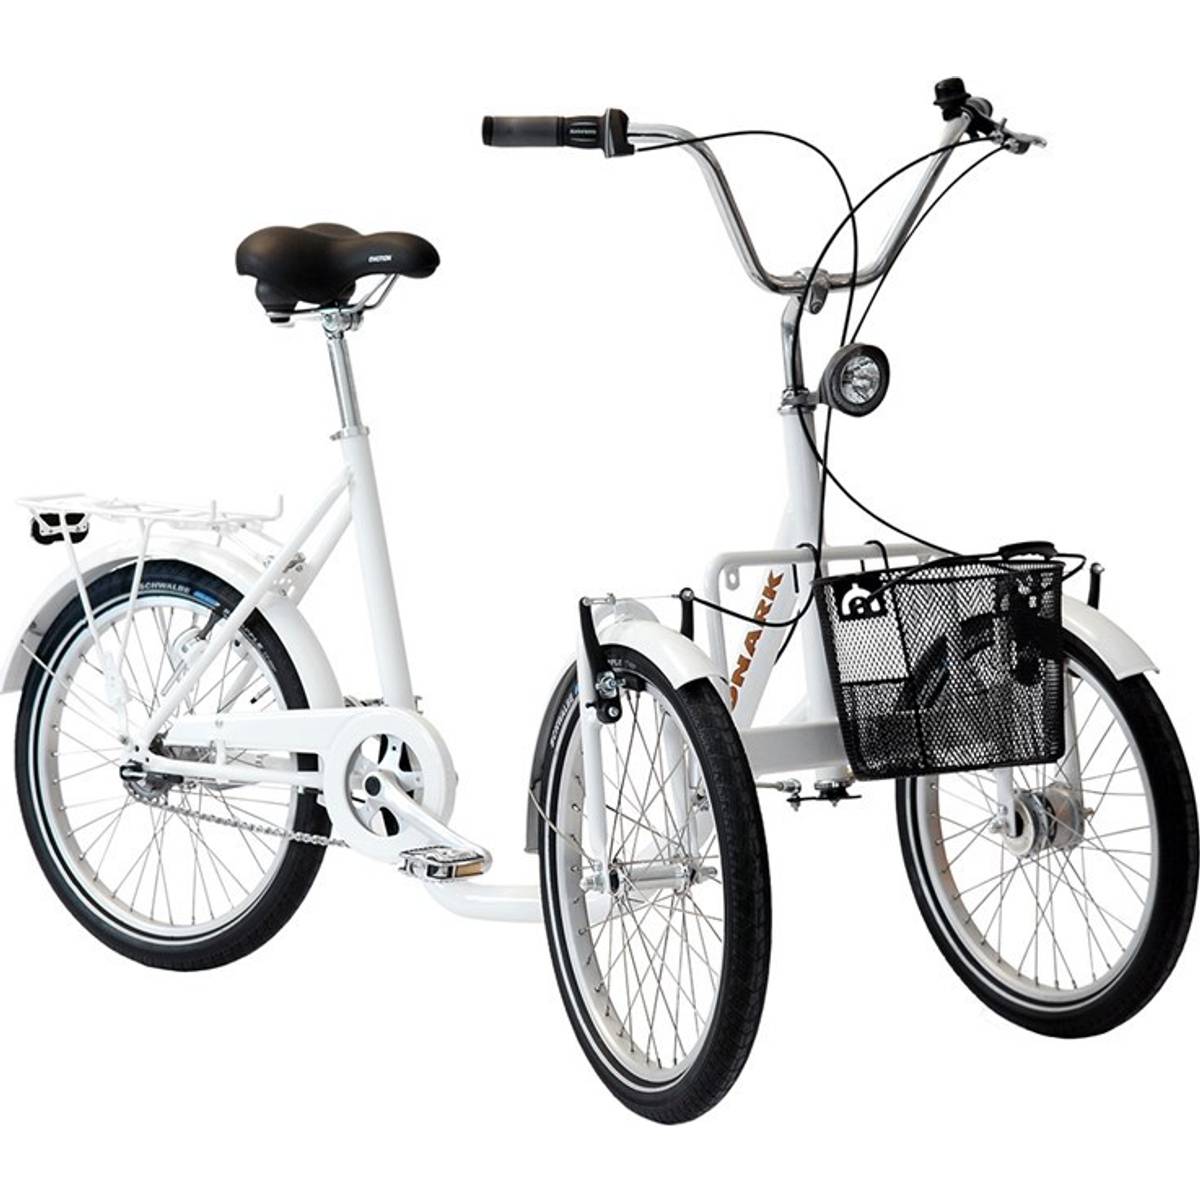 Monark Trehjuling (19 produkter) hos PriceRunner • Se priser nu »